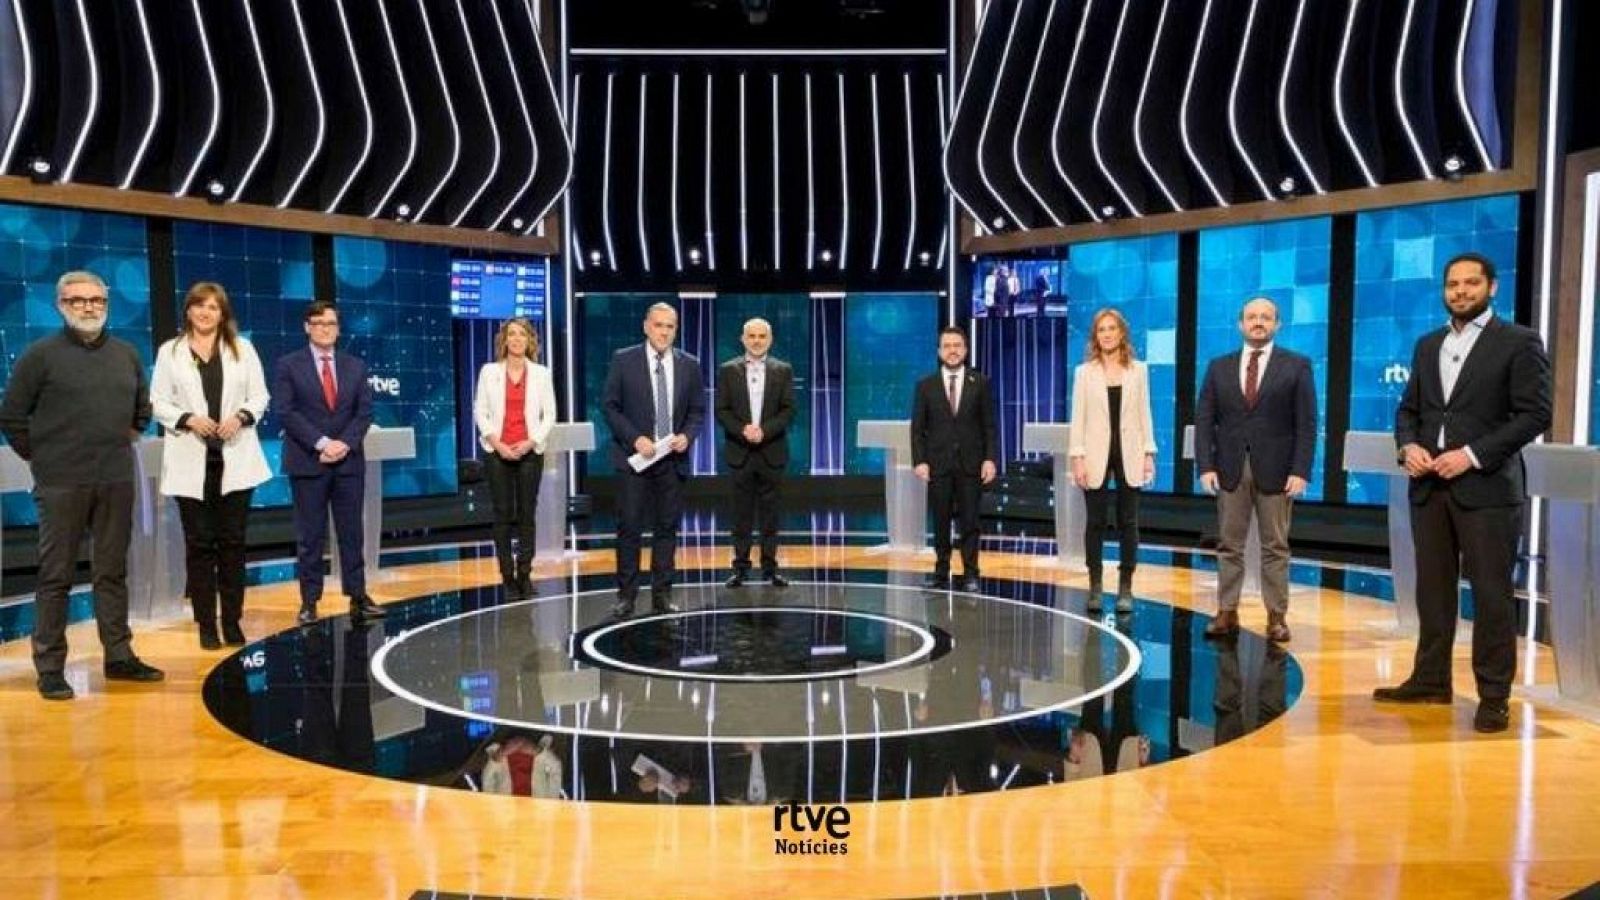 El minut d'or dels candidats | Debat Eleccions 14-F -RTVE Catalunya